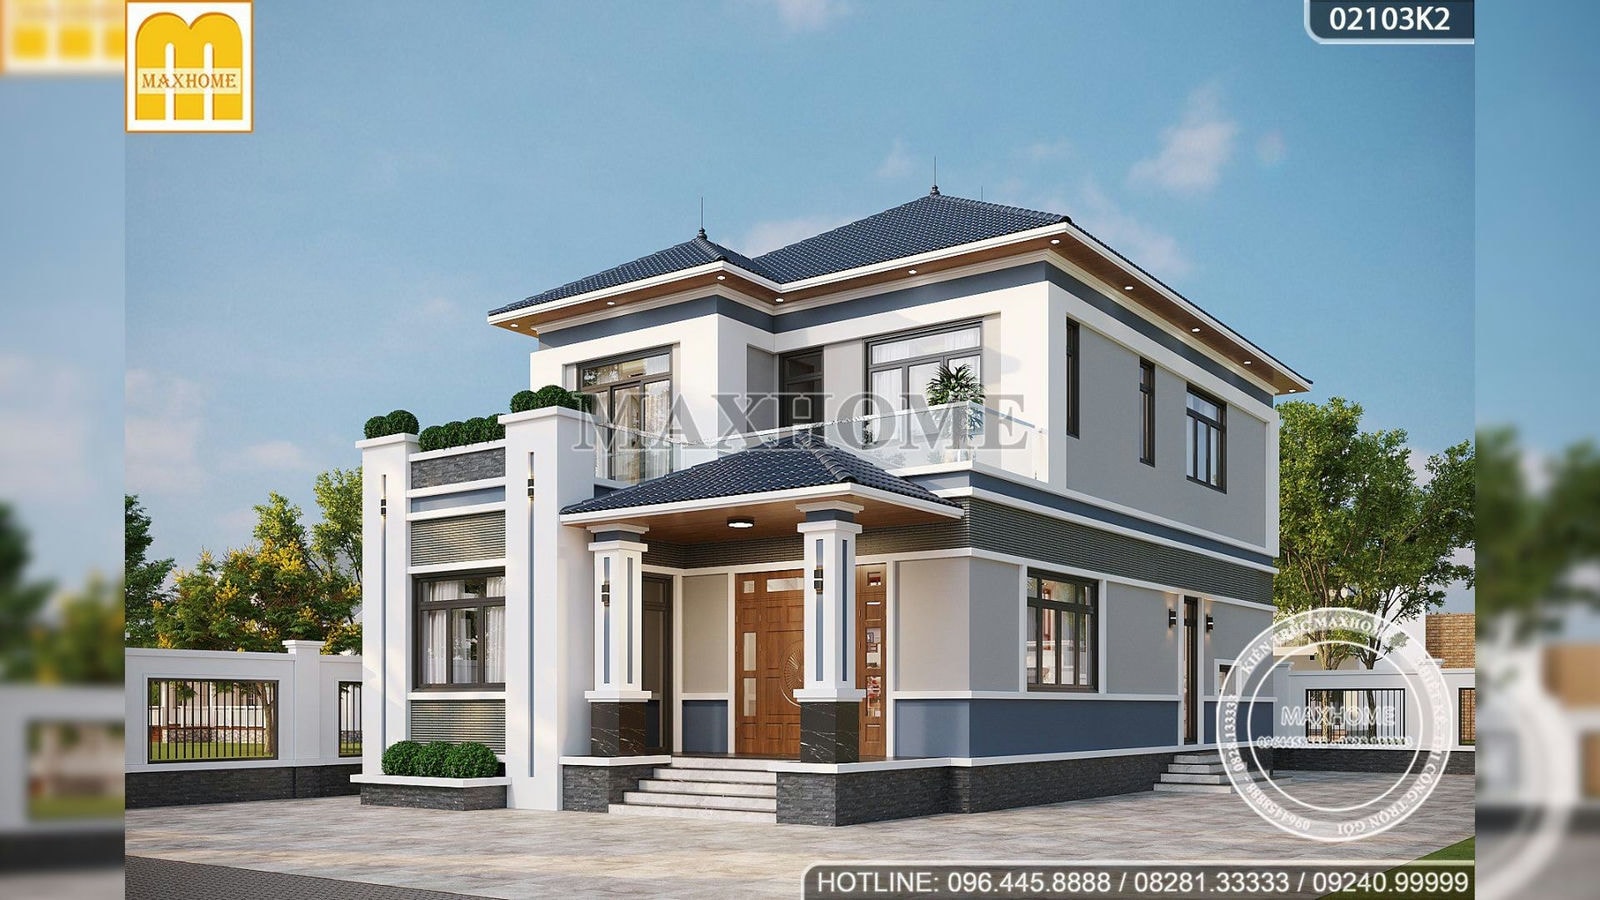 Maxhome thiết kế nhà mái Nhật 2 tầng hiện đại tại Hưng Yên | MH01691